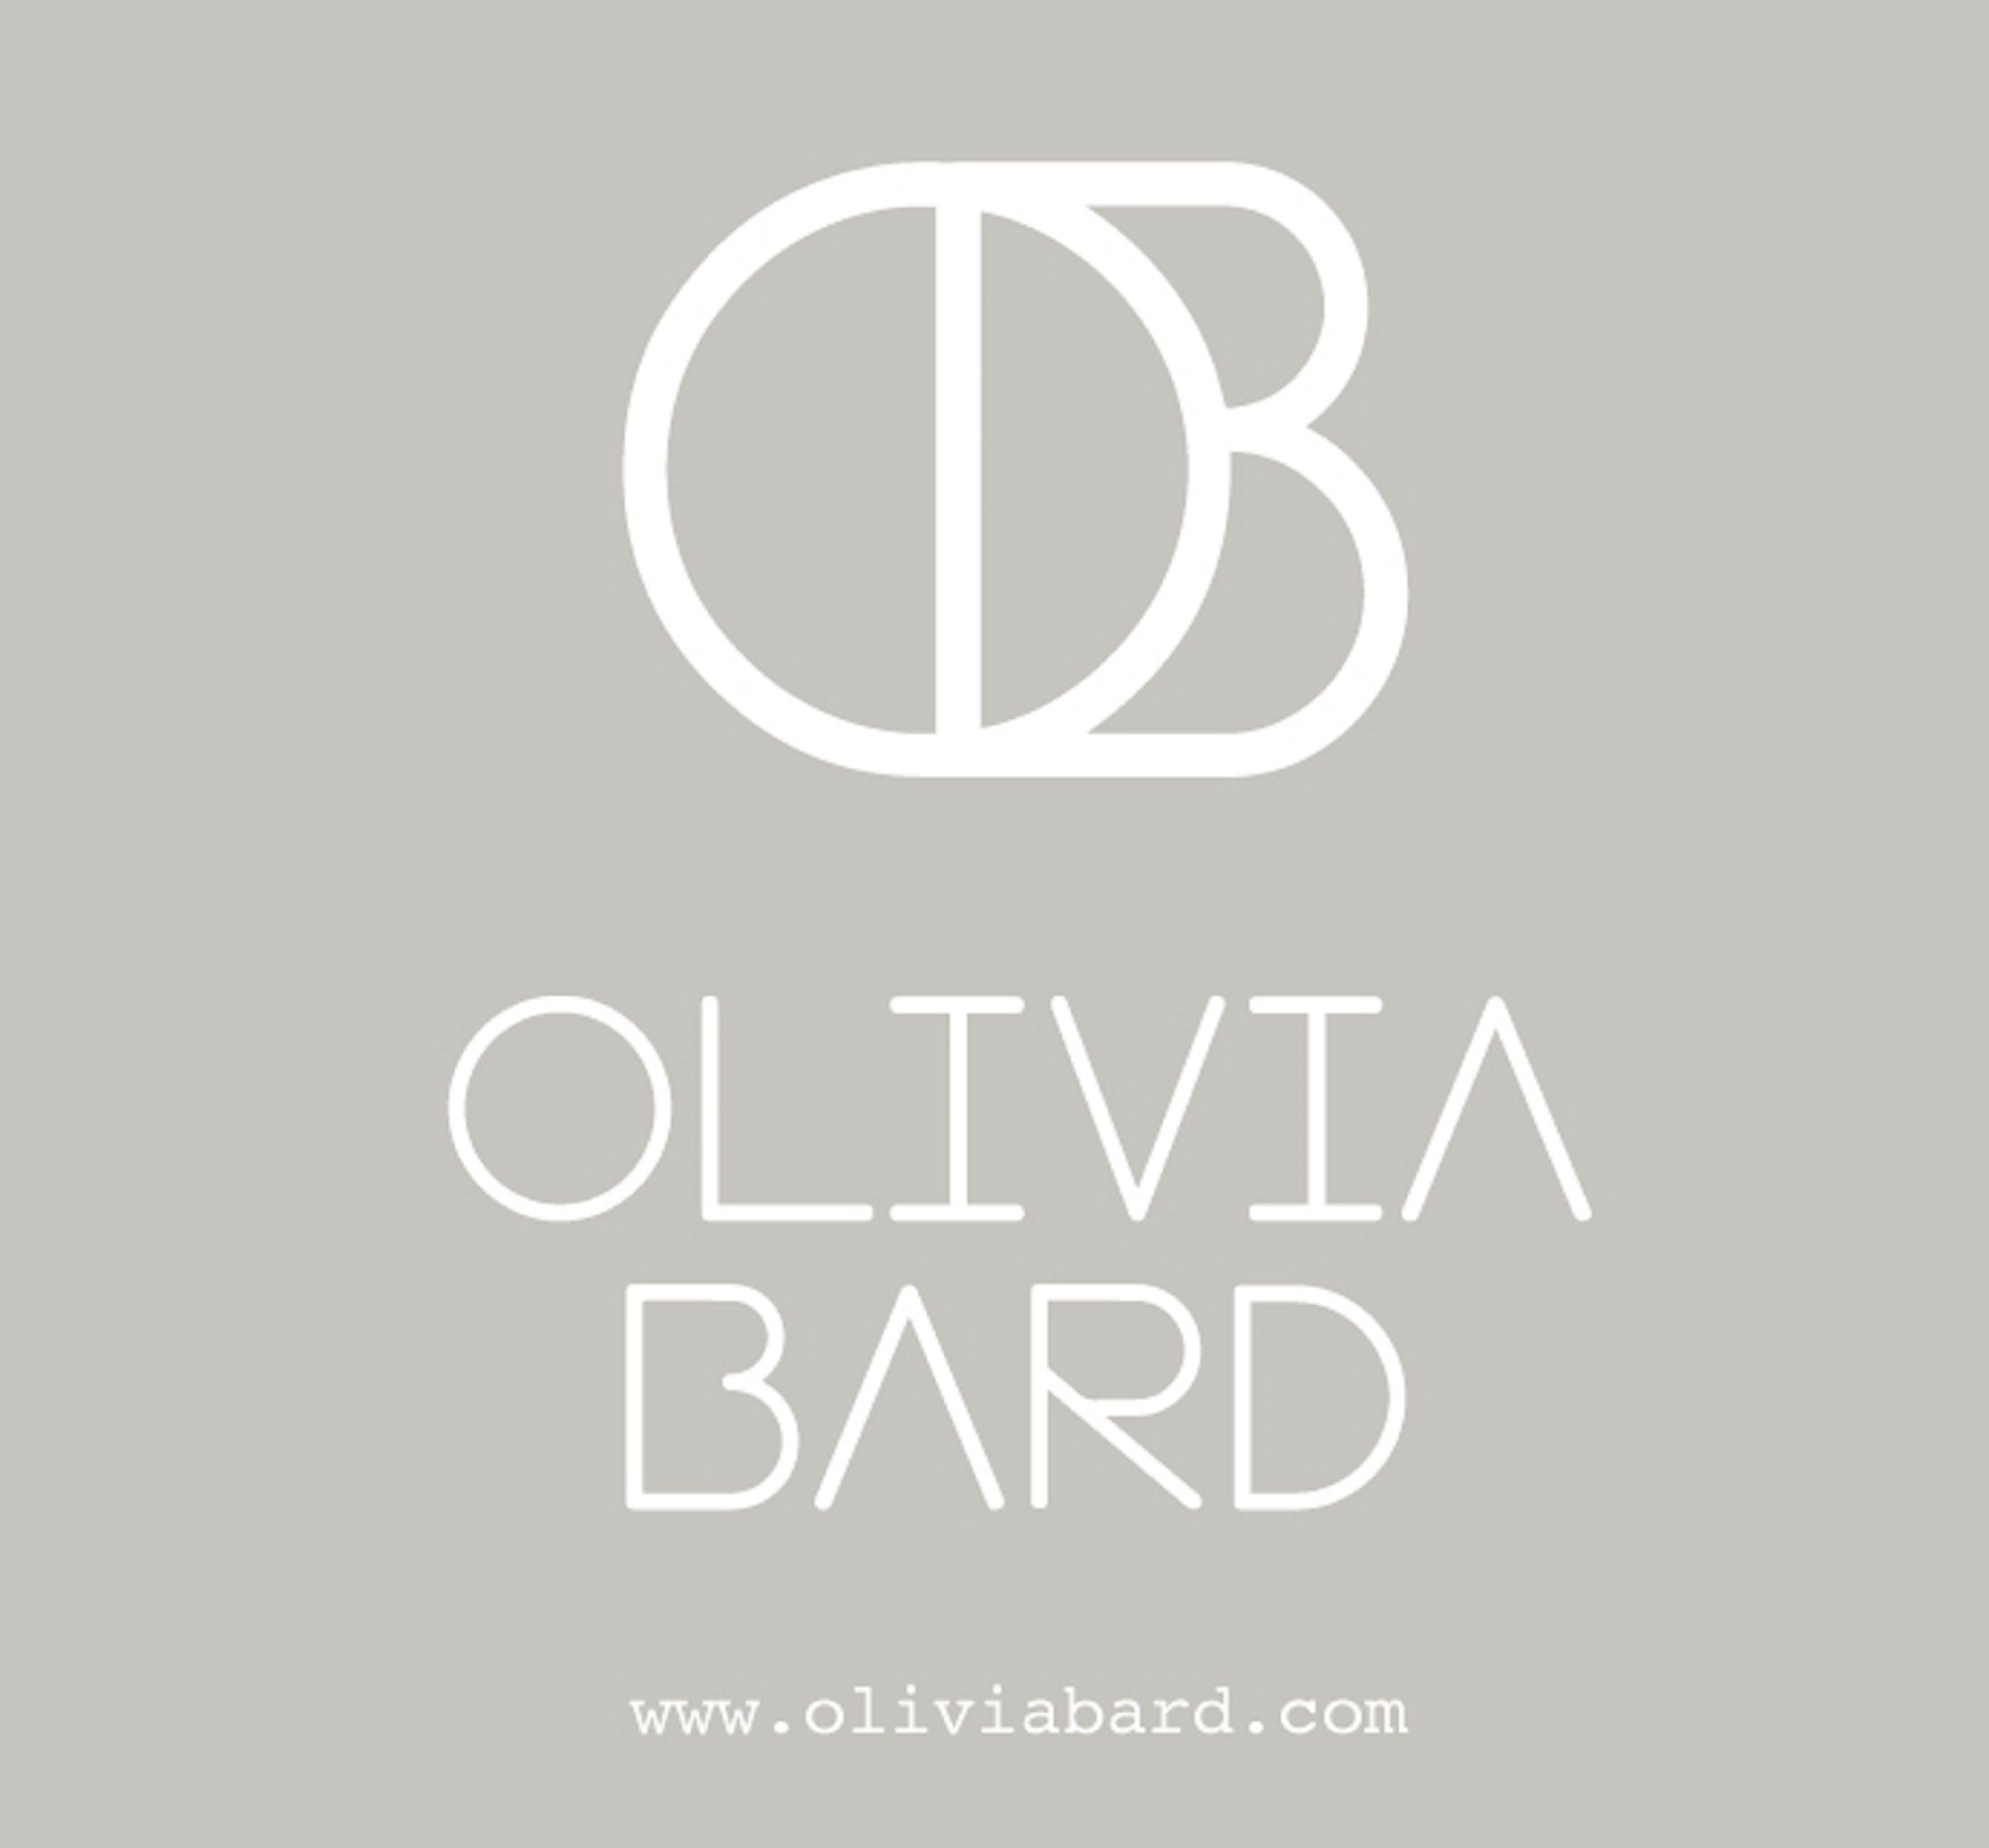 OLIVIA BARD